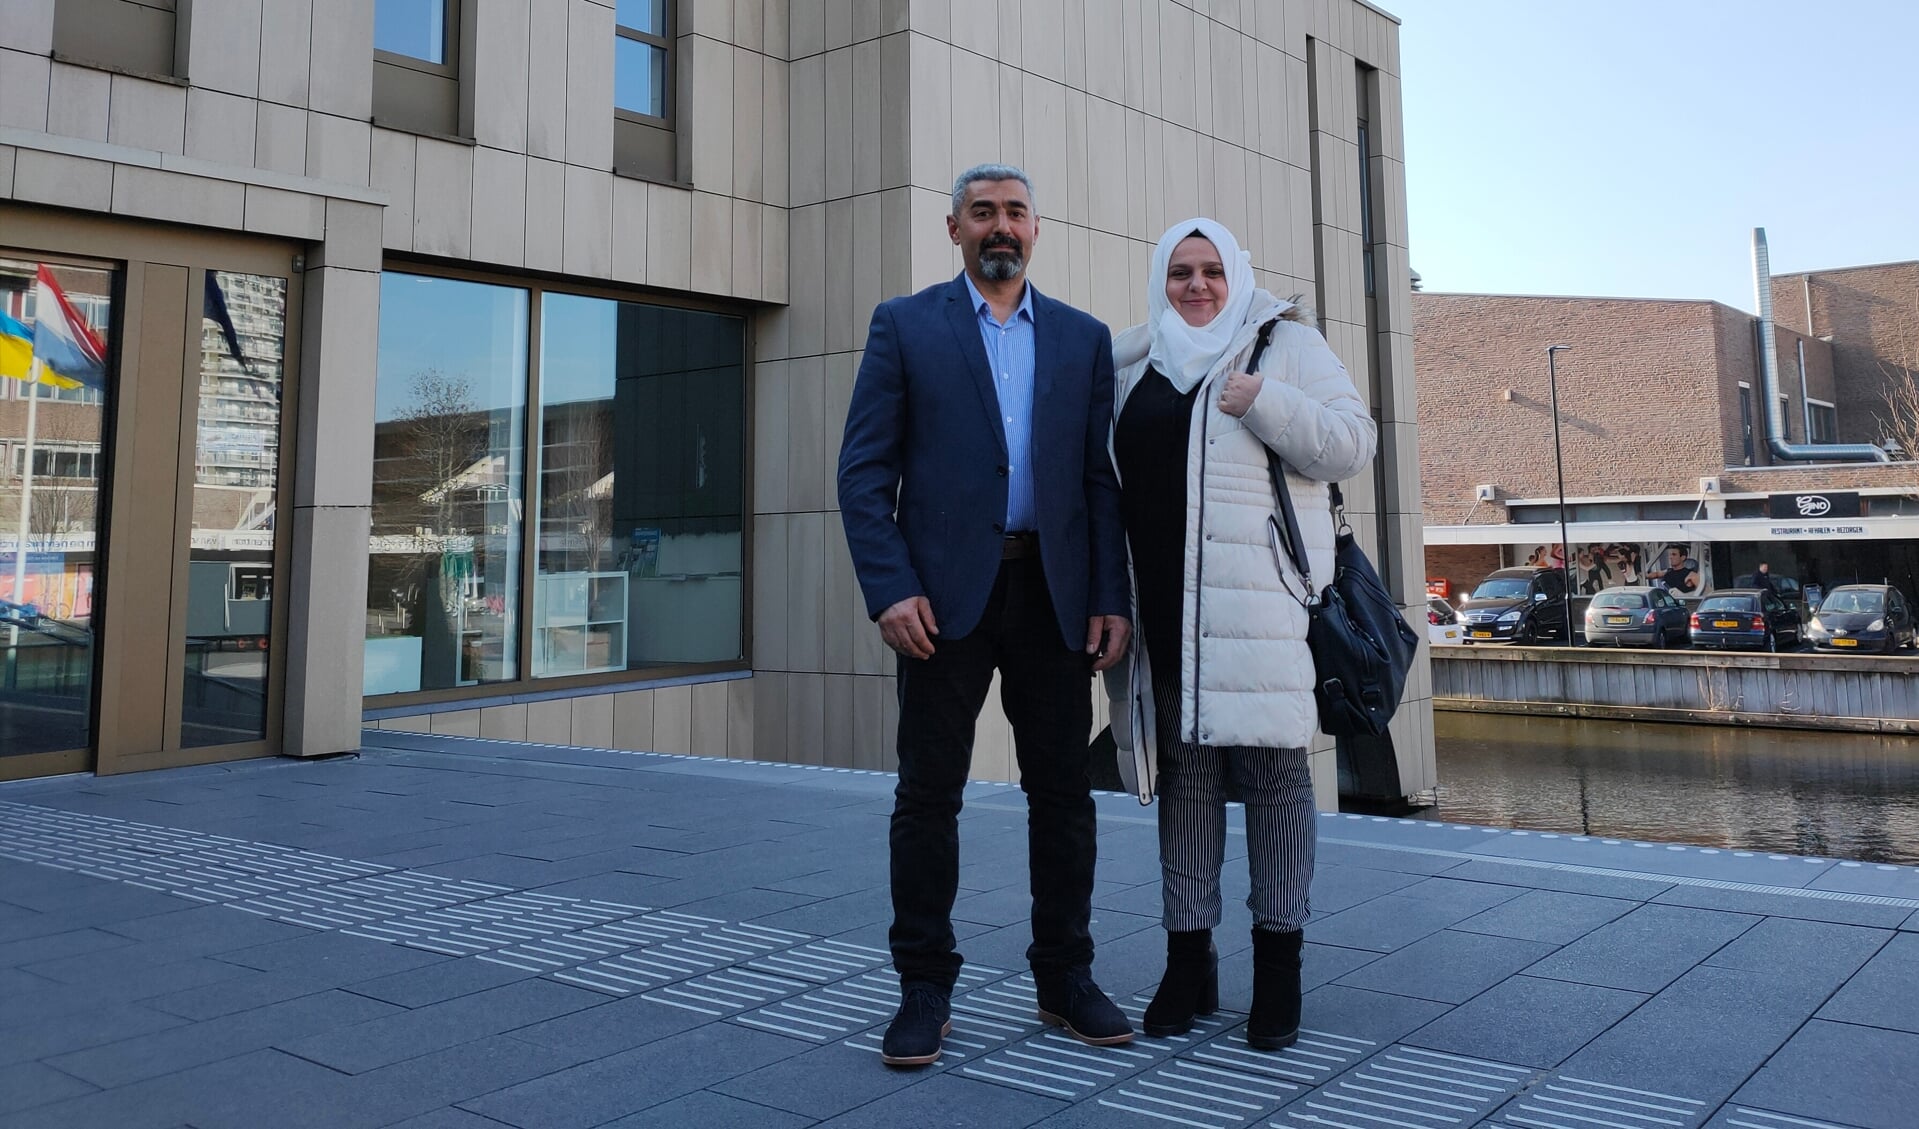 • Said Alhattab en Hana Aldabbour voor het gemeentehuis in Krimpen aan den IJssel.